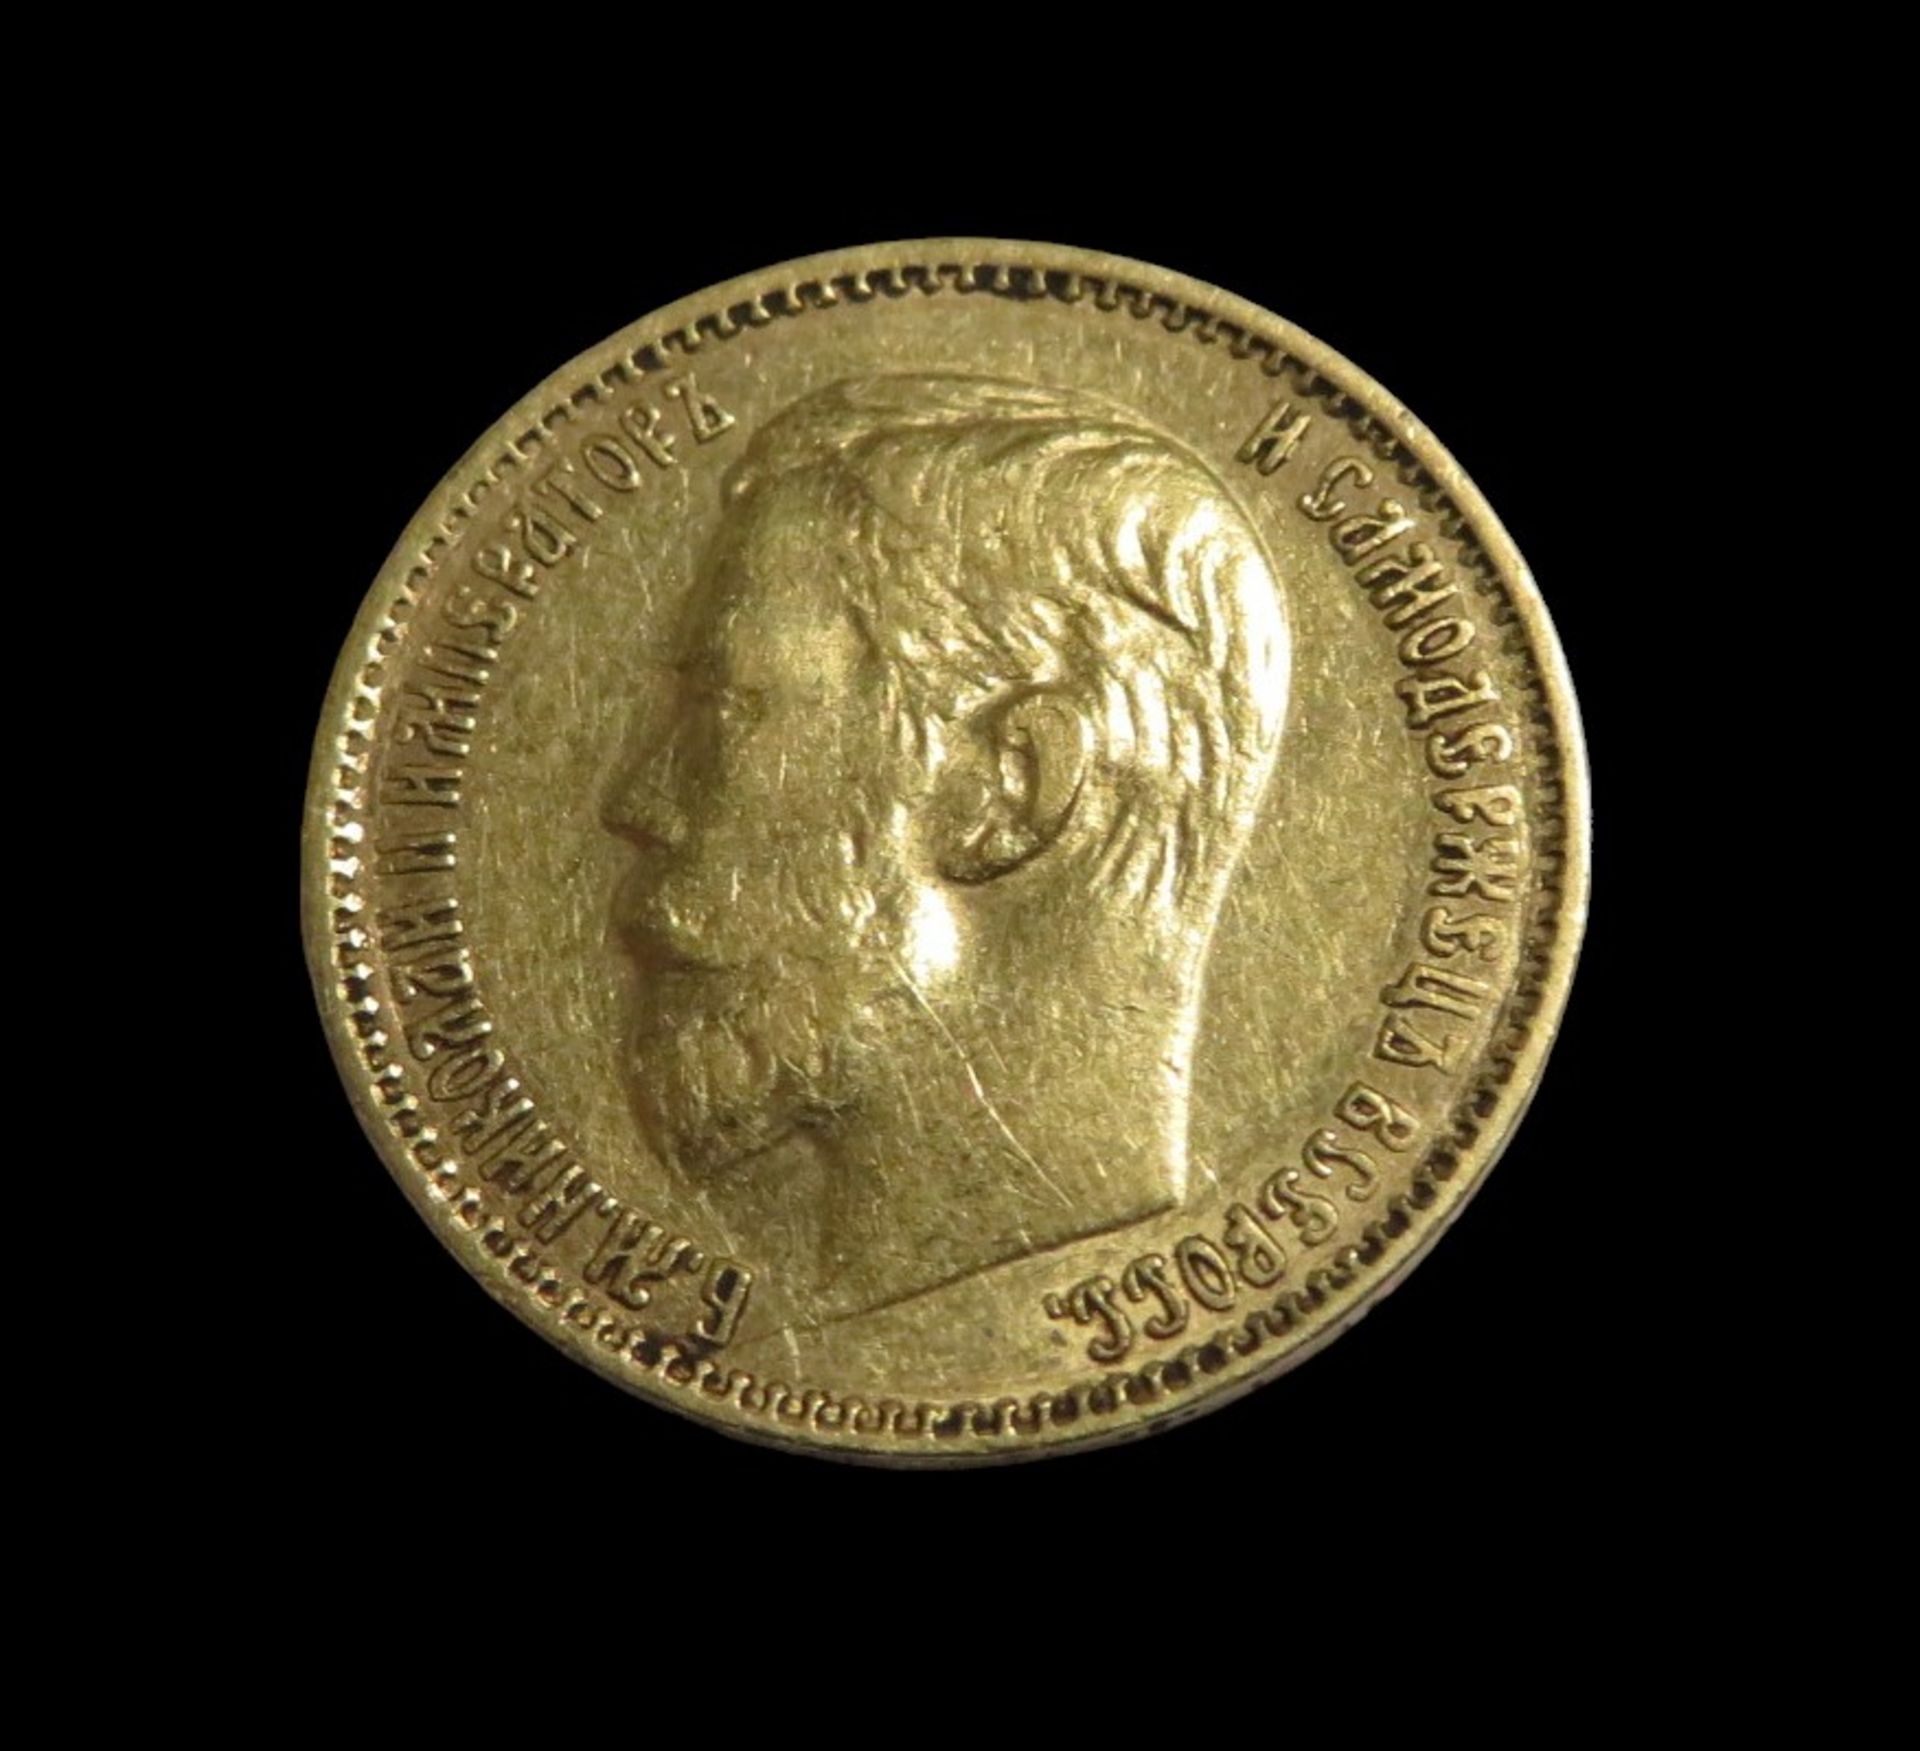 Goldmünze, Russland, 5 Rubel, Nikolaus II, 1899, Gold 900/000, 4,3 g, d 1,85 cm.